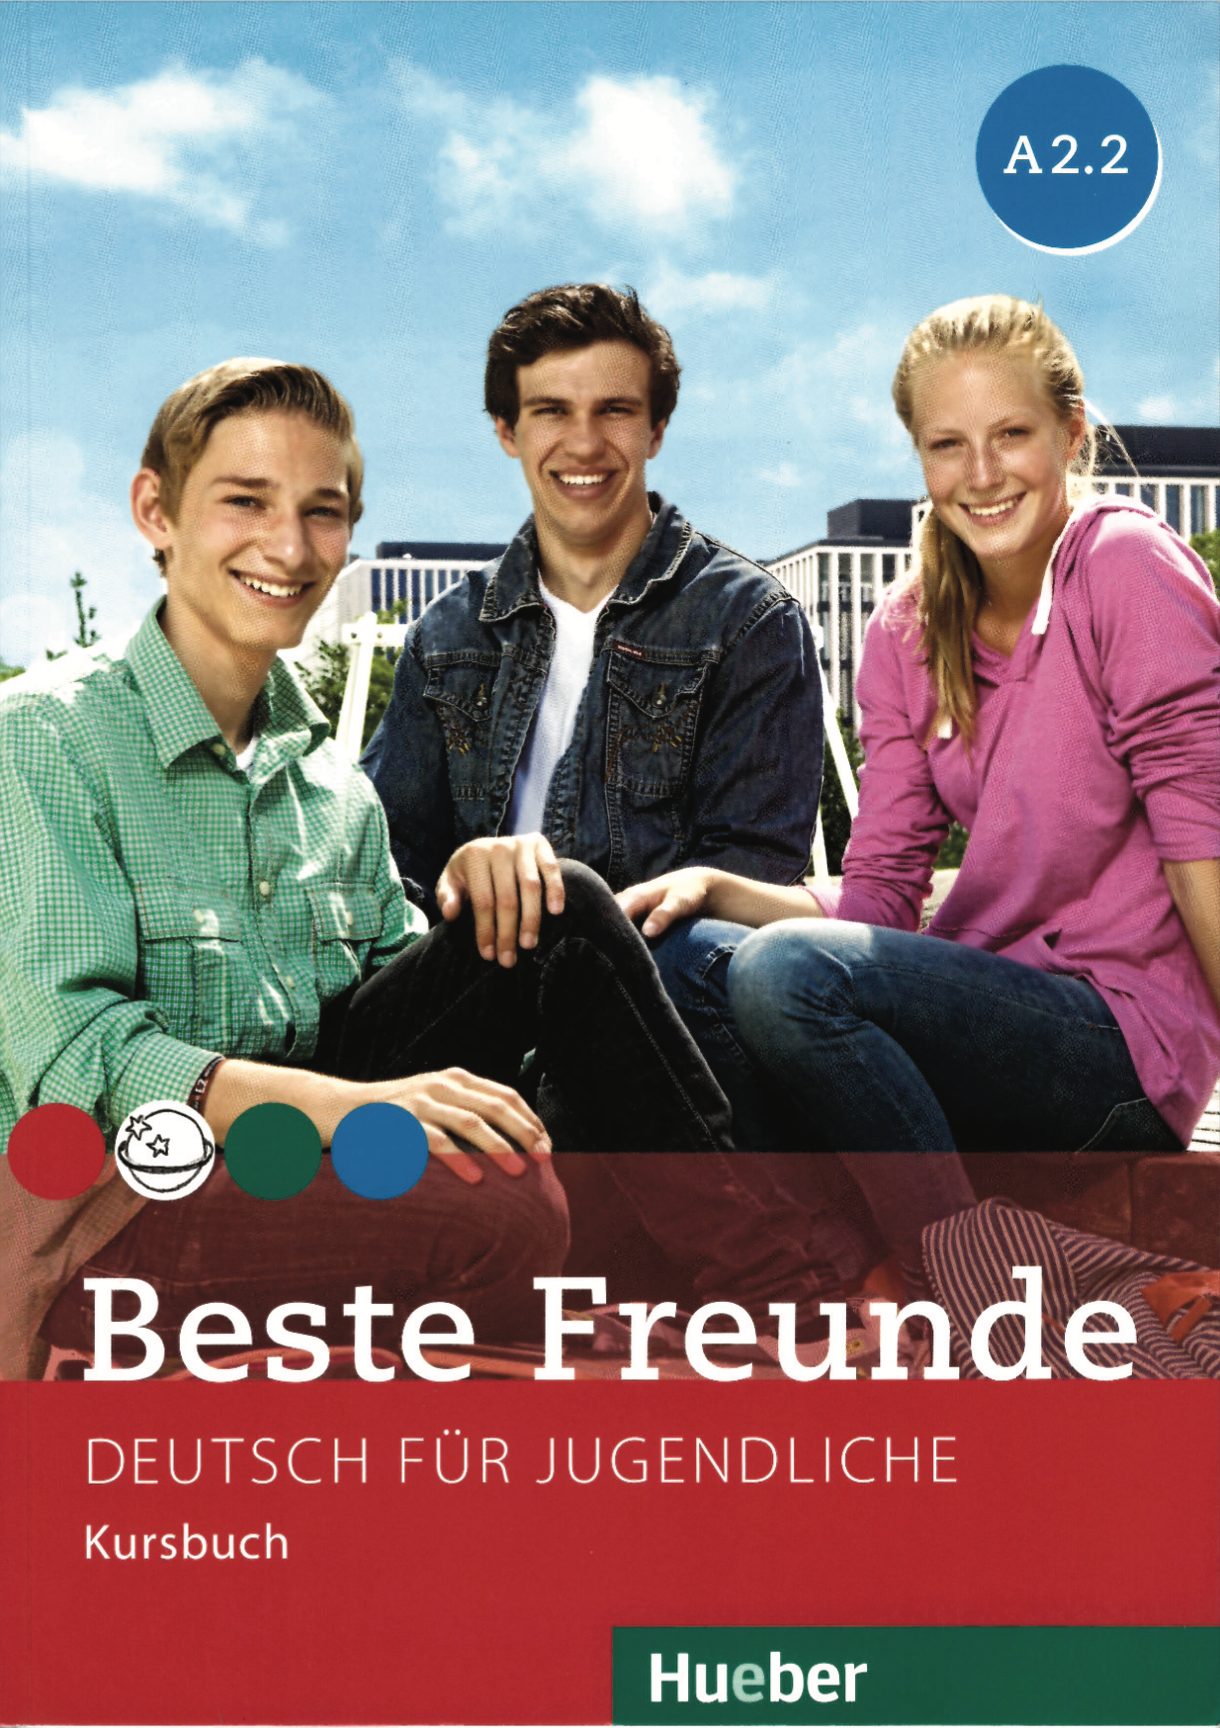 دانلود کتاب Beste Freunde A2.2